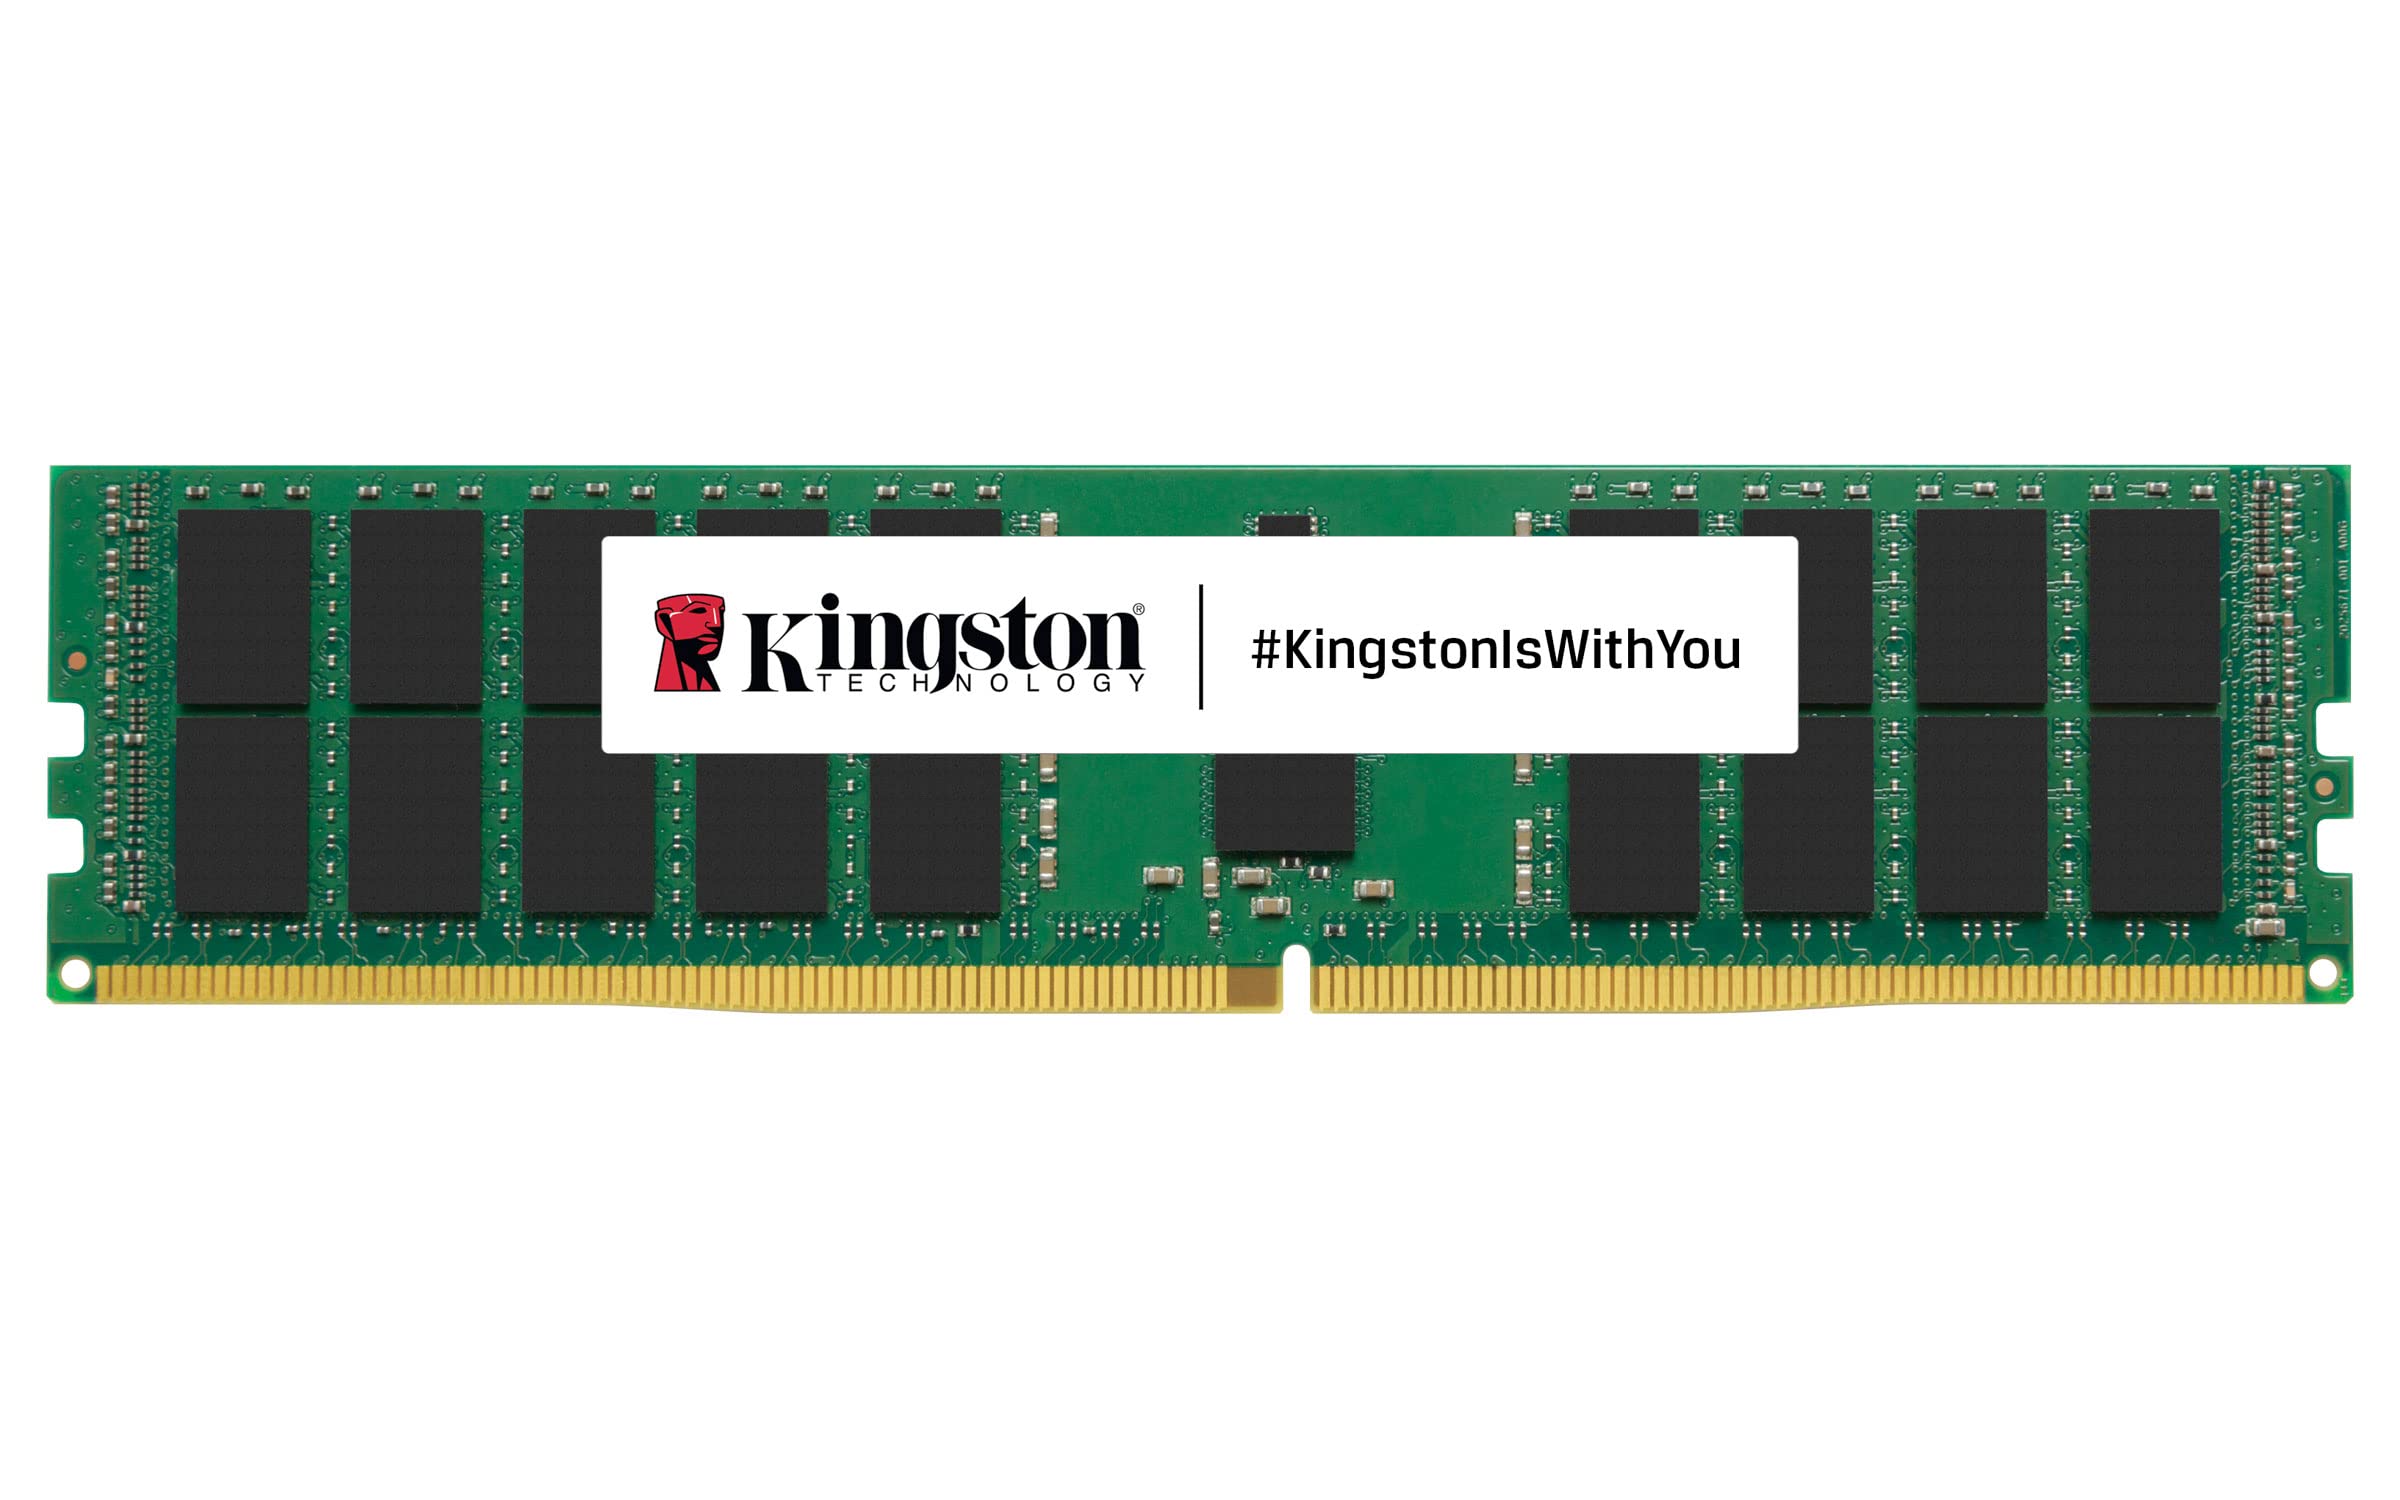 キングストンテクノロジー サーバー用 メモリ DDR4 2933MHz 16GB1枚 ECC Registered DIMM CL21 1.2V 288-pin